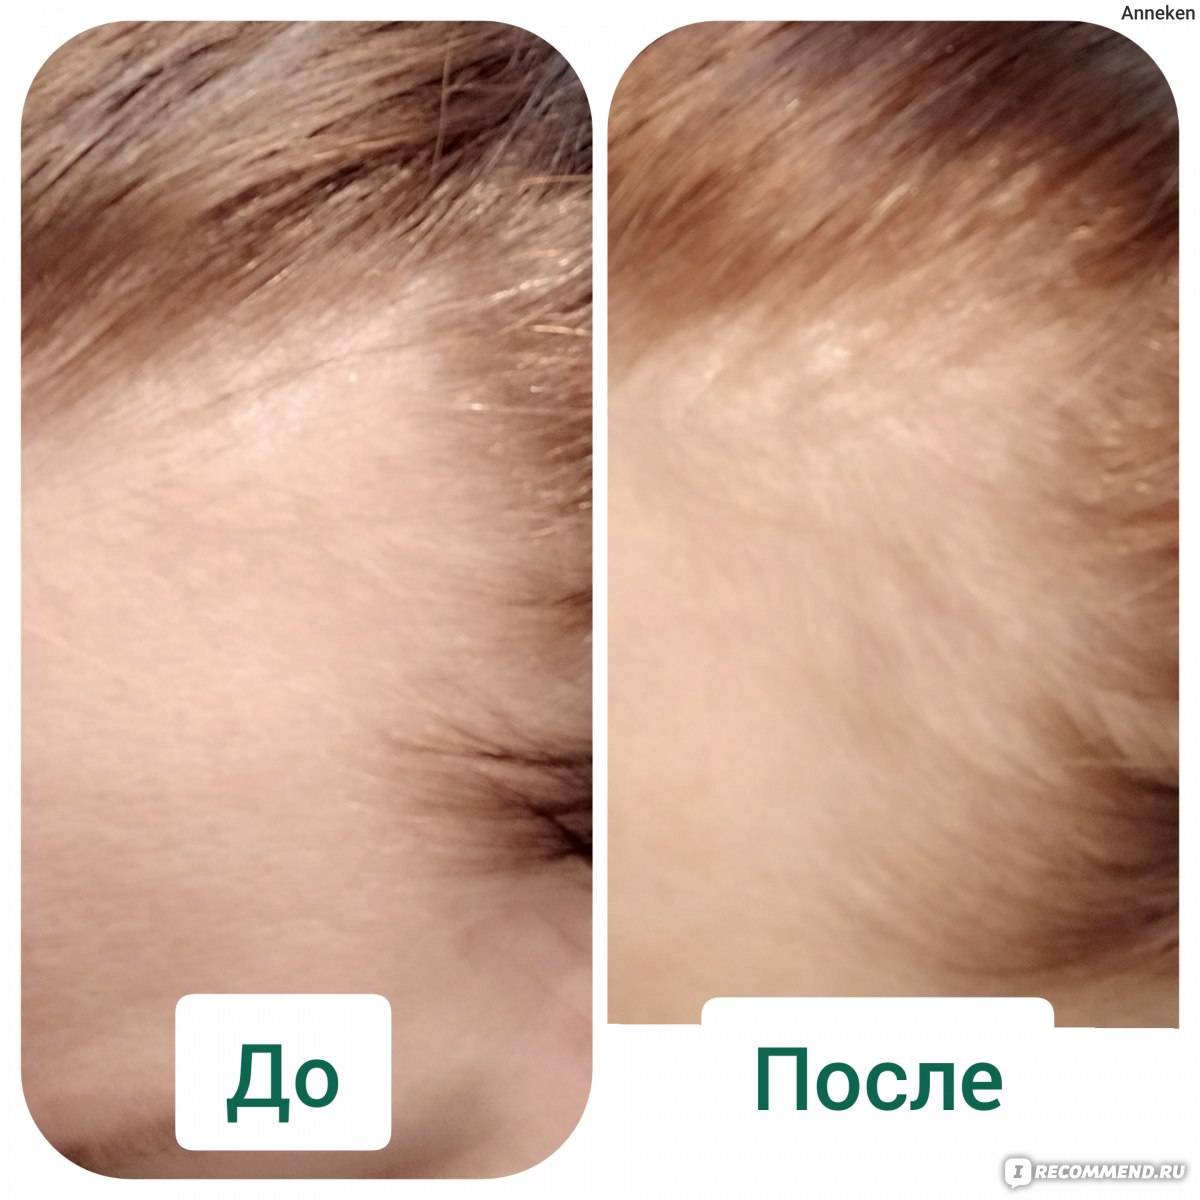 Уход за волосами после родов: выпадение волос и окрашивании при грудном вскармливании